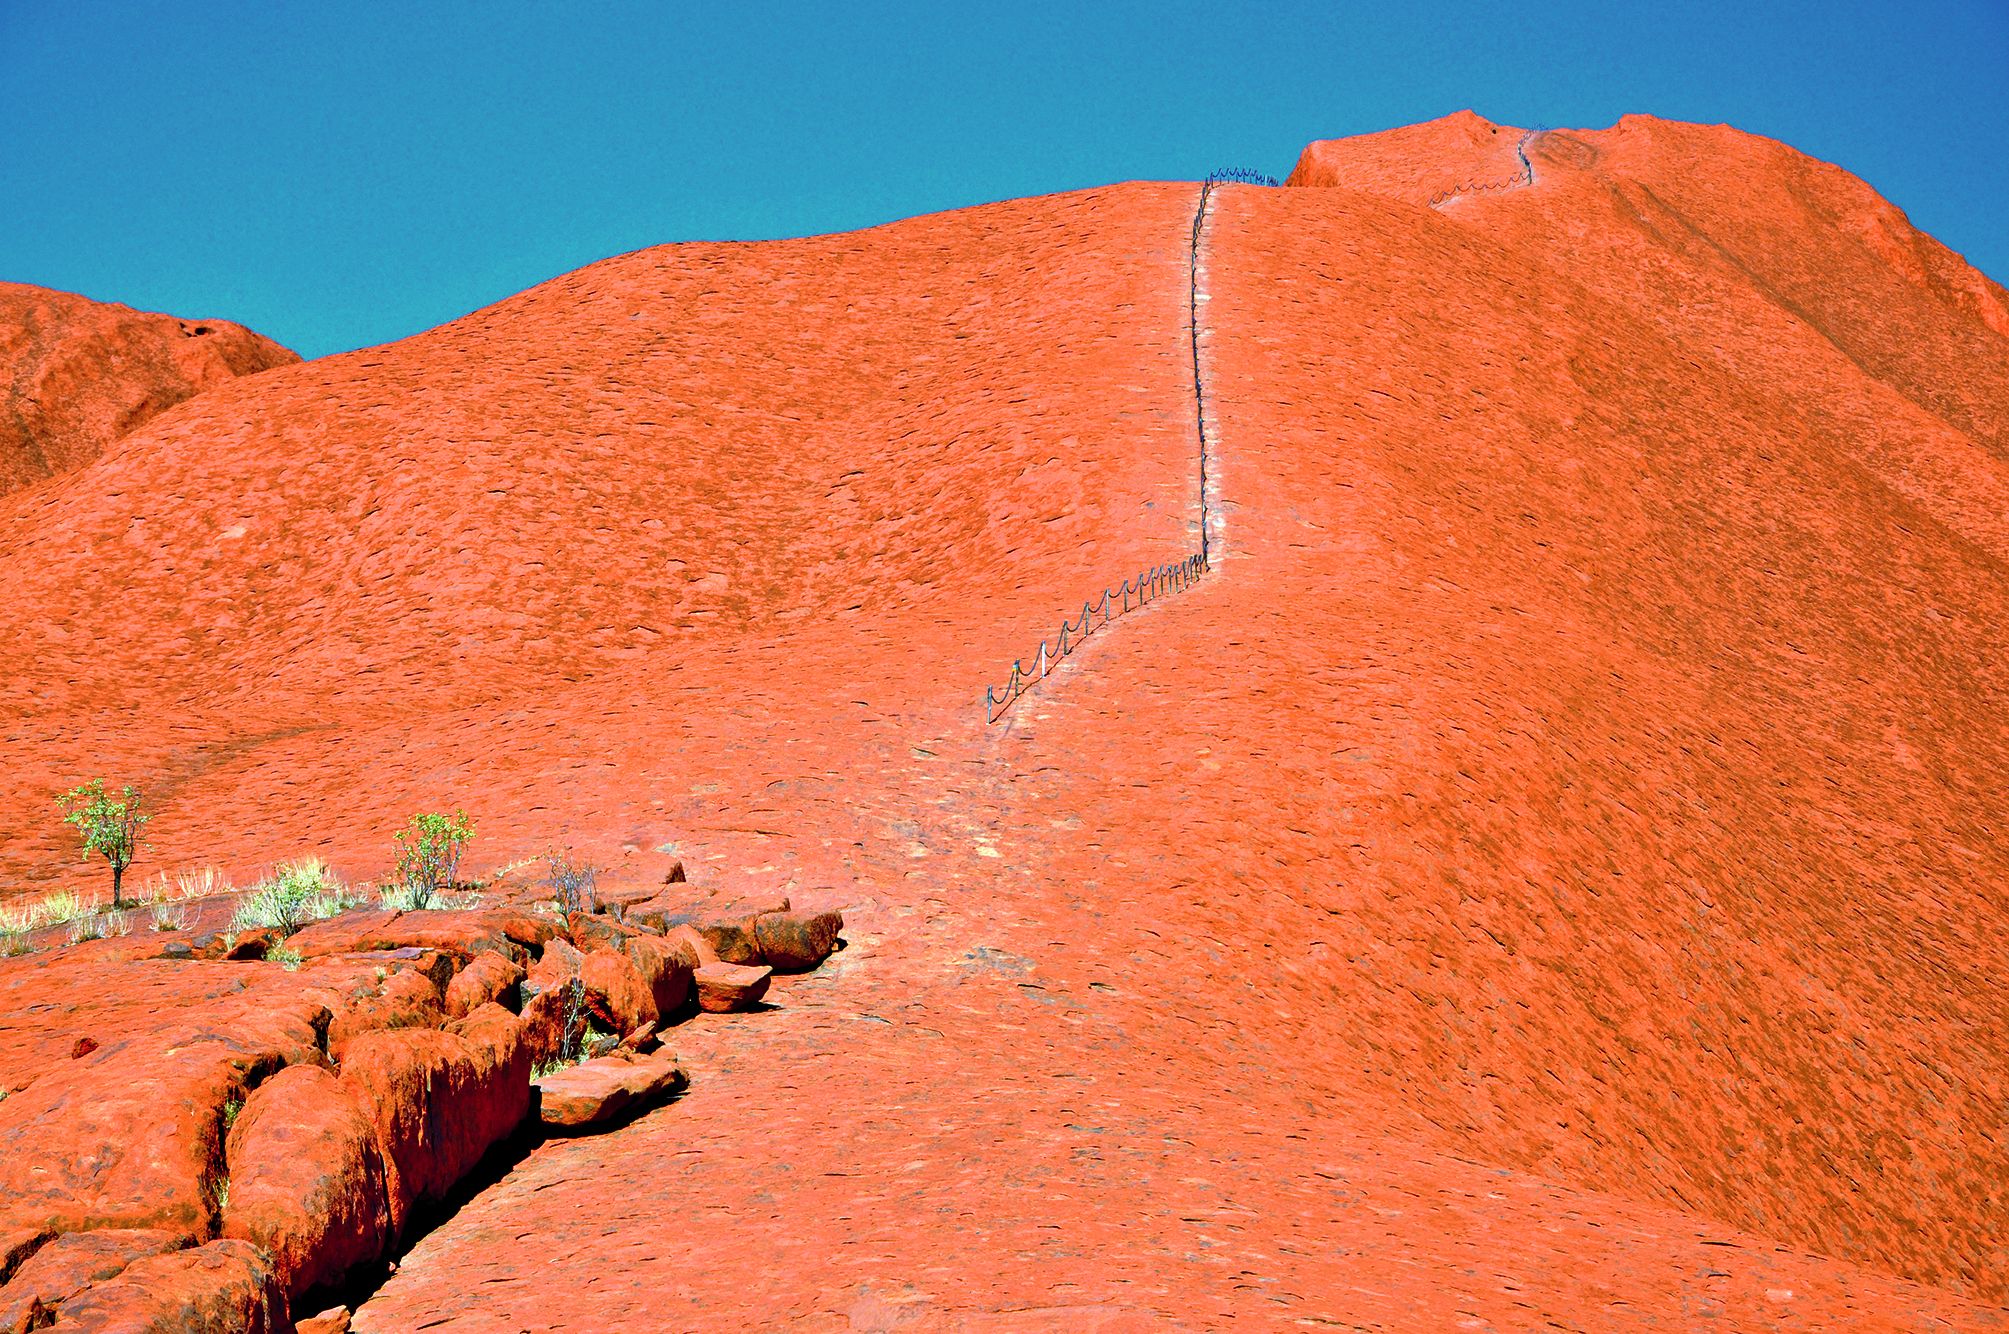 Au pied du massif, un large panneau recommande de ne pas escalader Uluru par respect pour les propriétaires aborigènes.La chaîne qui aide les touristes à monter et à descendre, aurait été coupée, lors du 30e anniversaire de la rétrocession, en octobre 201